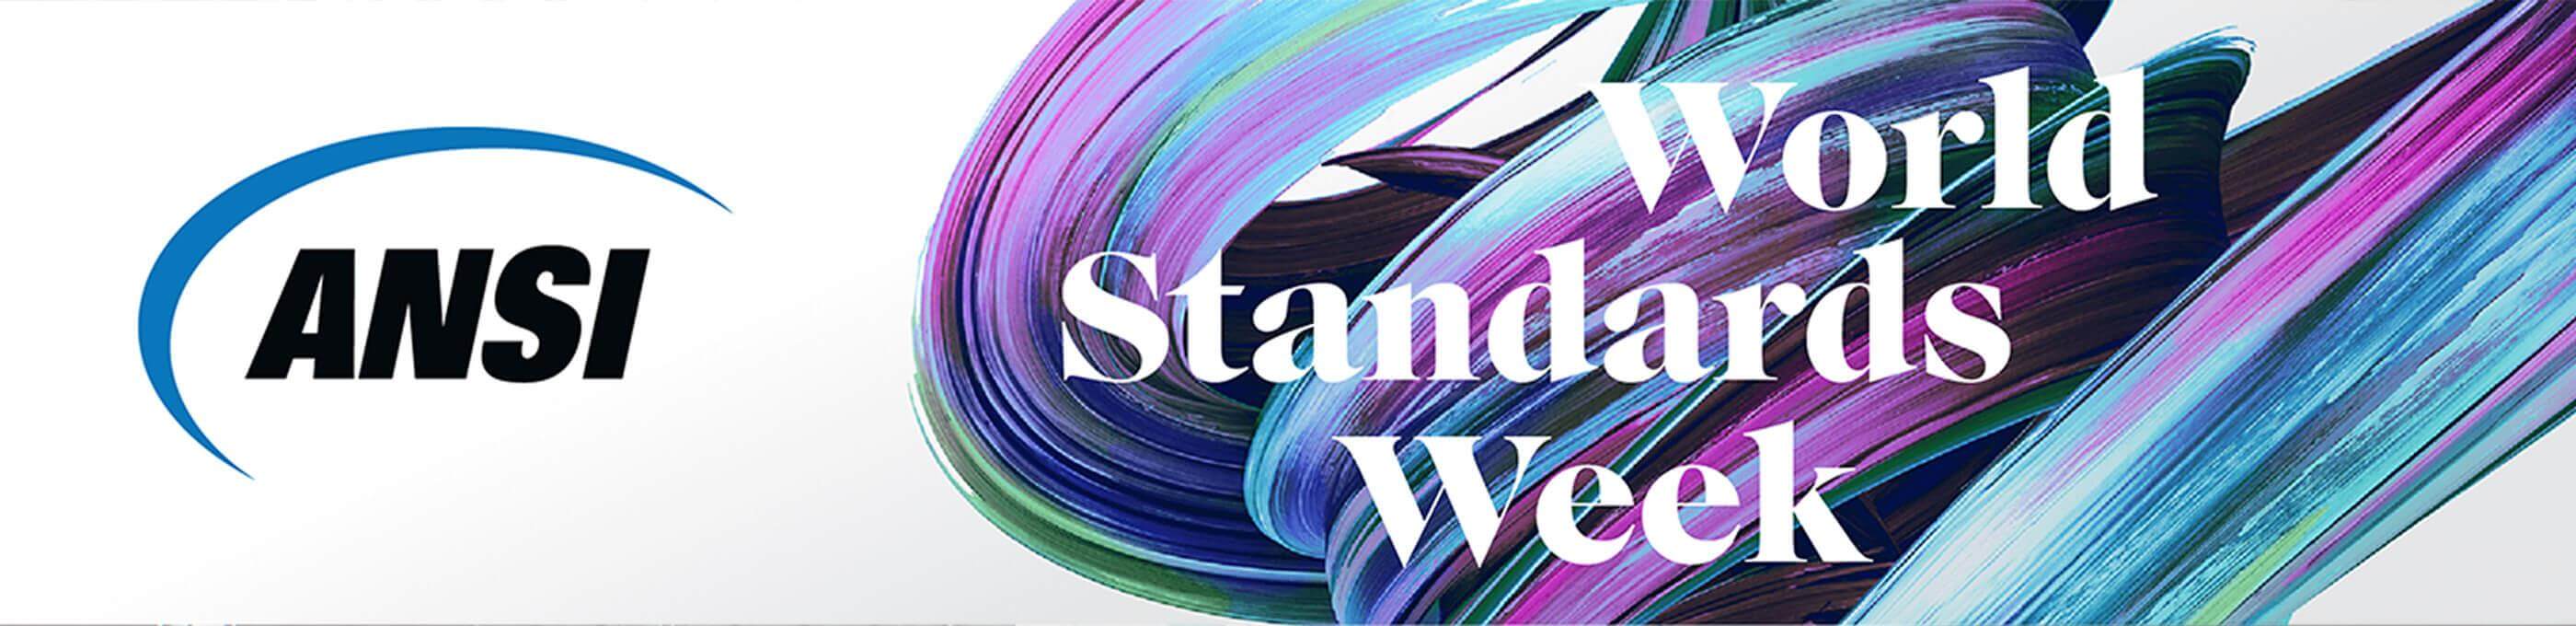 ANSI World Standard Week 2021